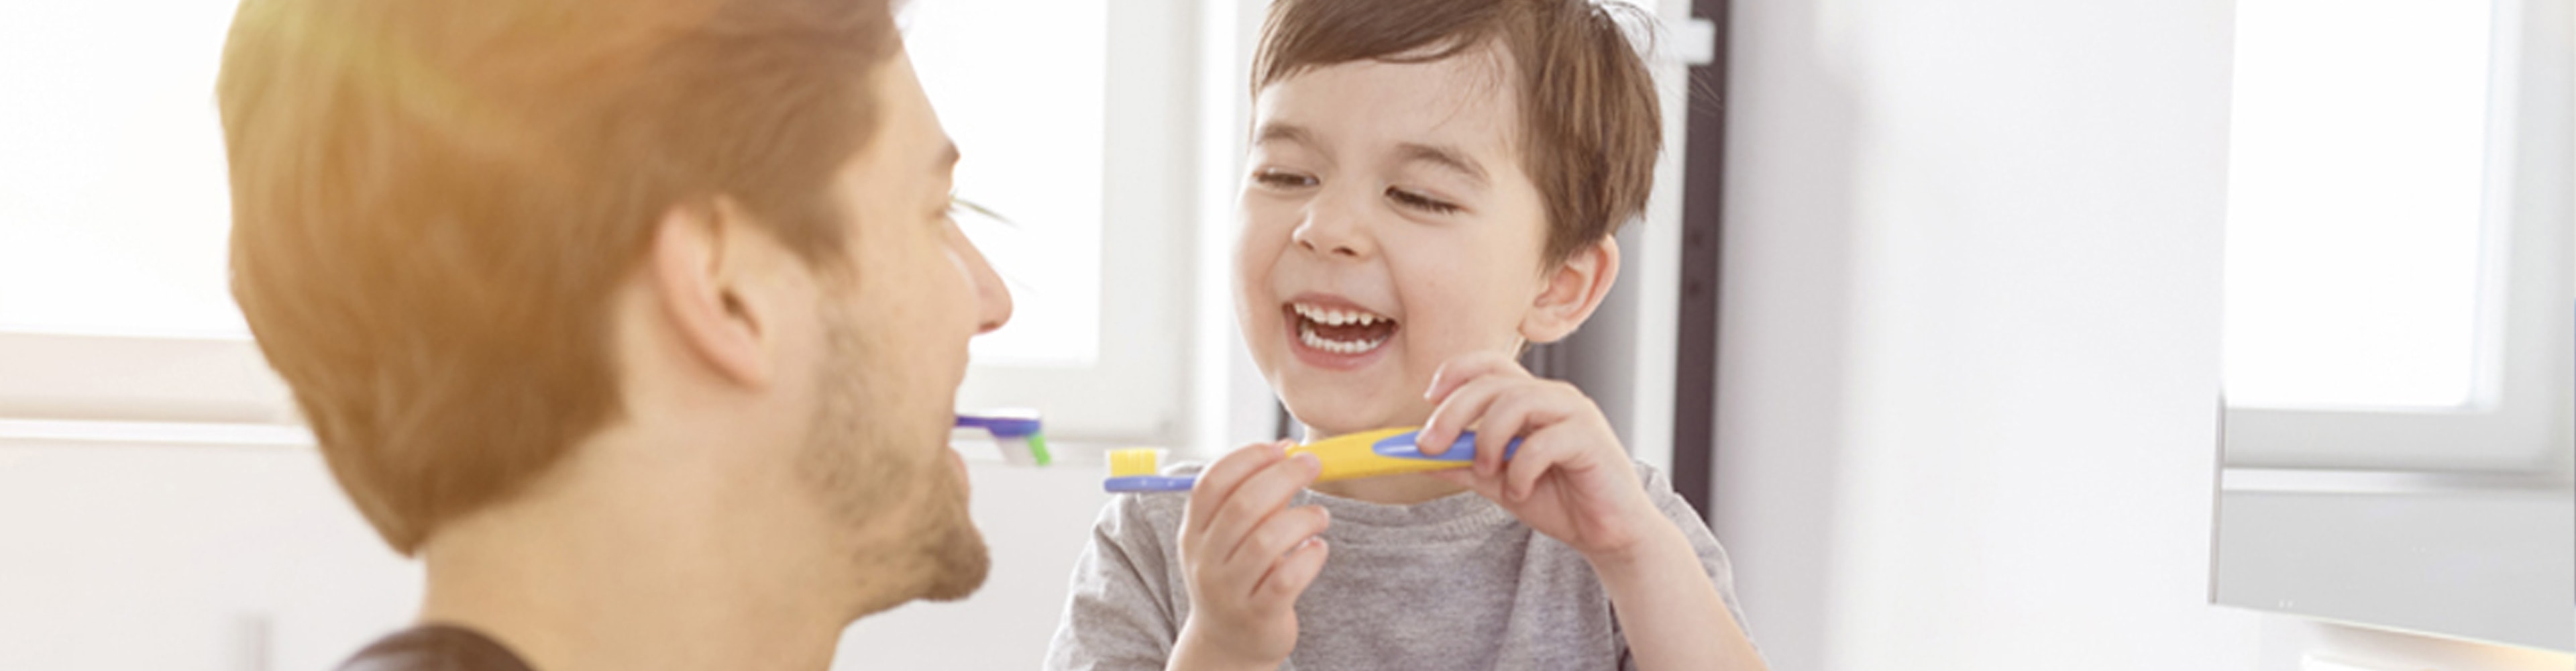 Wie motivierst Du Deine Kinder fürs Zähneputzen?